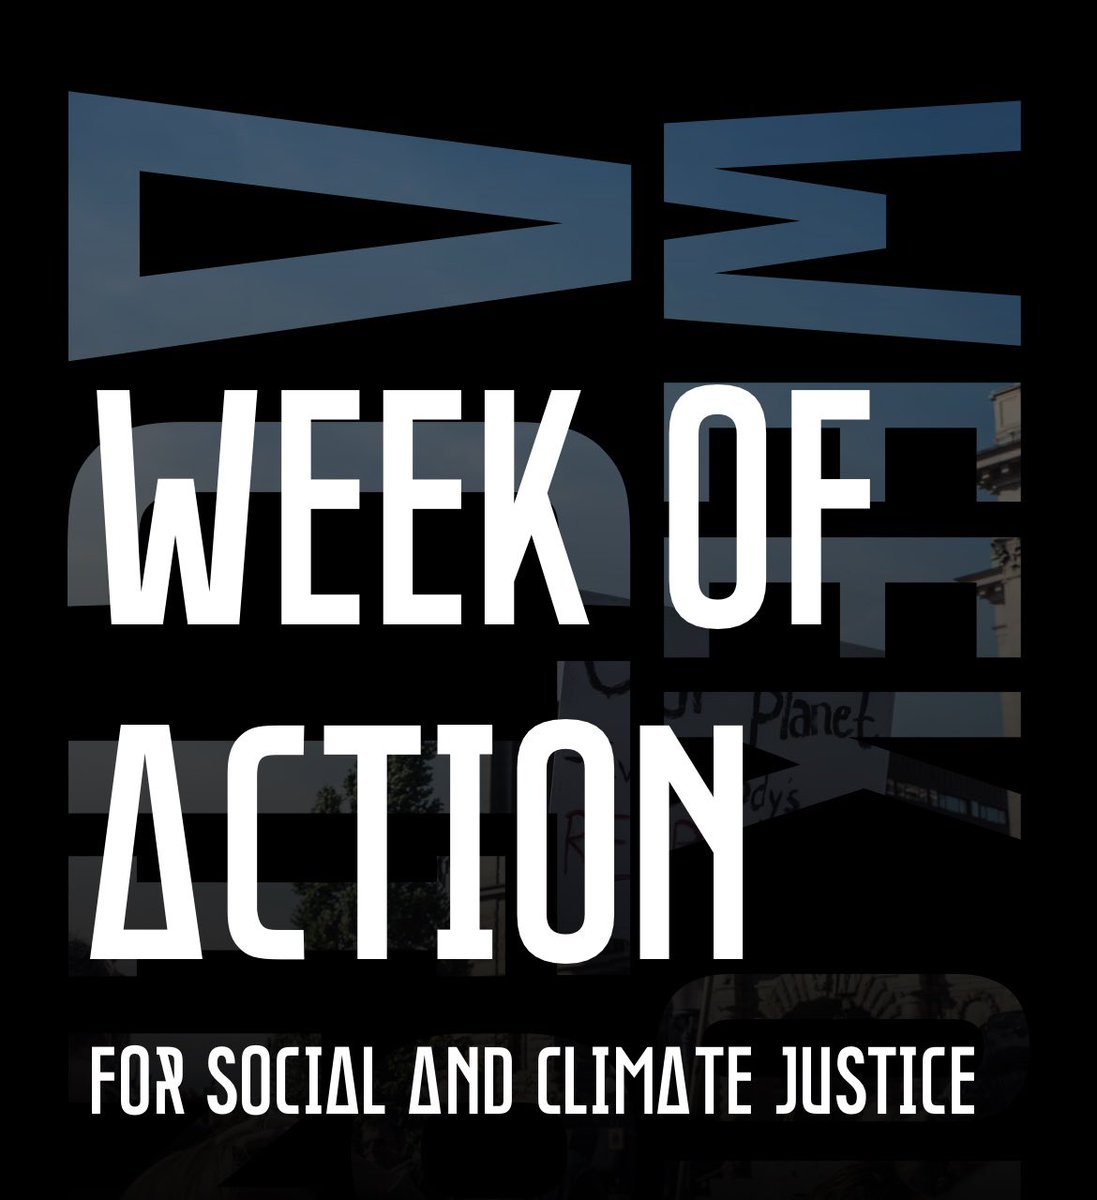 Över 100 organisationer, grupper och rörelser bjuder in till en aktionsvecka för social och klimaträttvisa mellan den 15 - 22 september. 
Läs mer: weekofaction.se